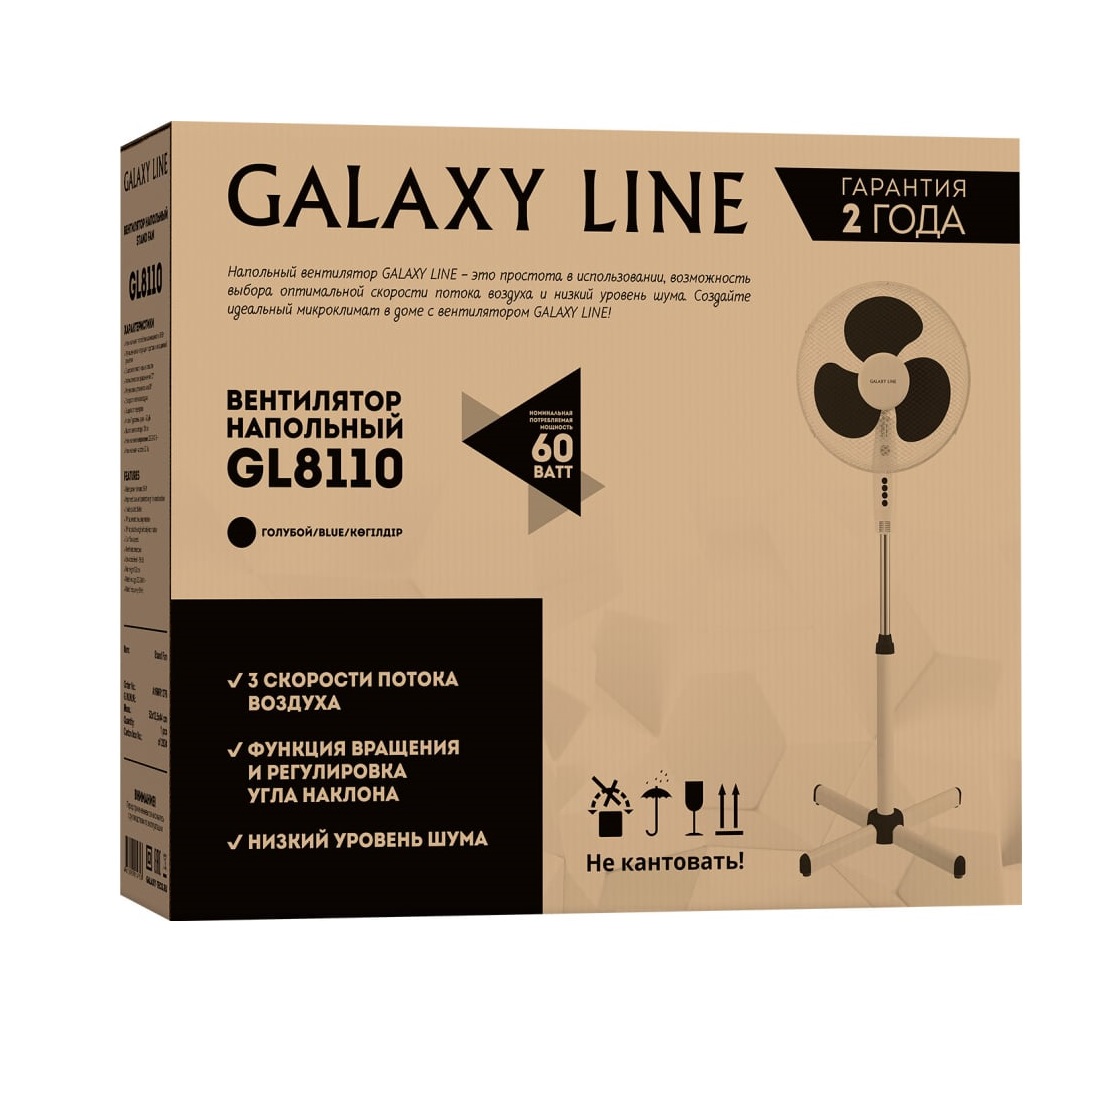 Вентилятор напольный Galaxy line GL8110